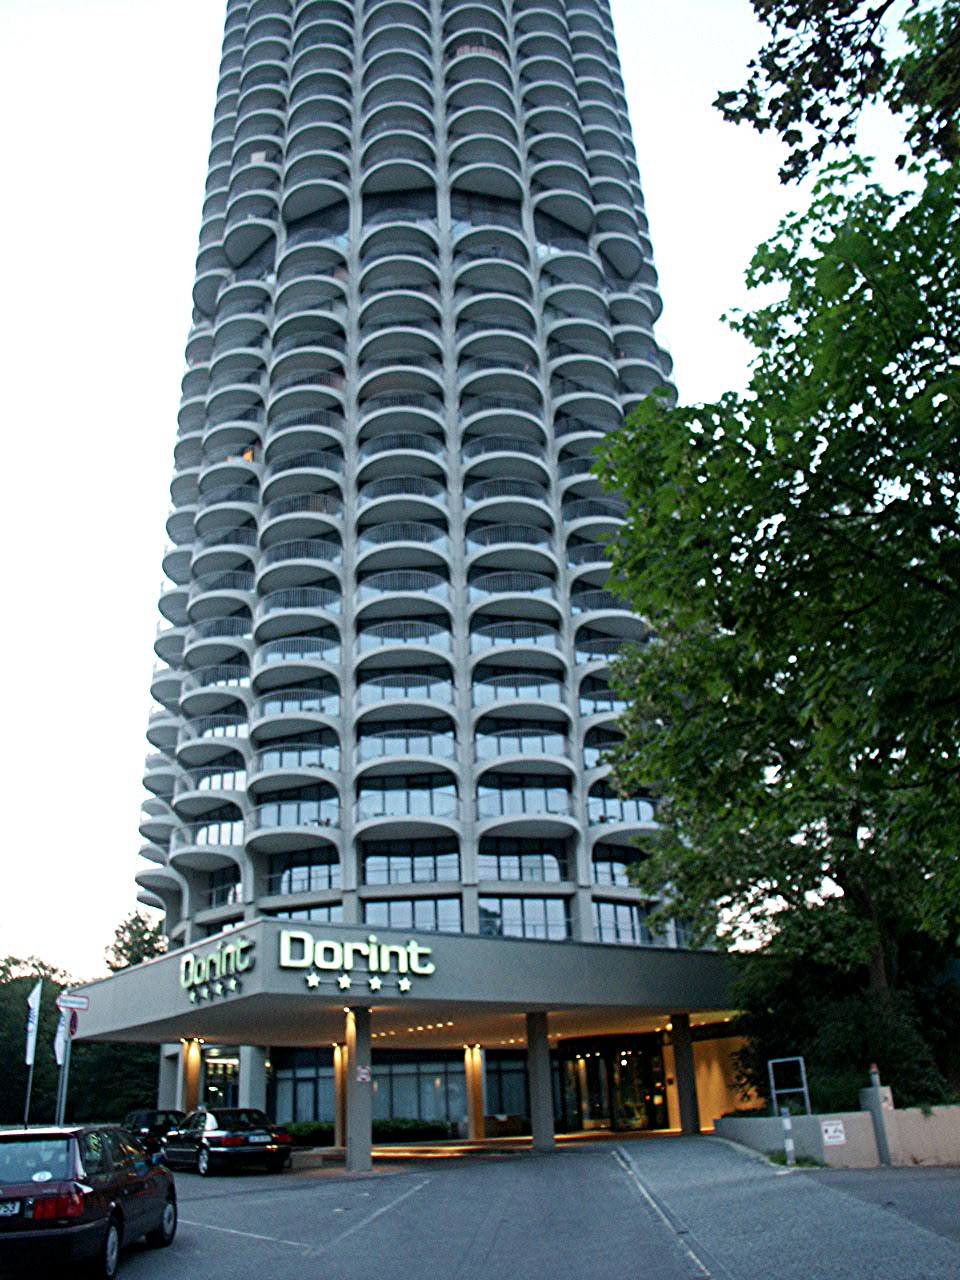 Hotelturm Augsburg